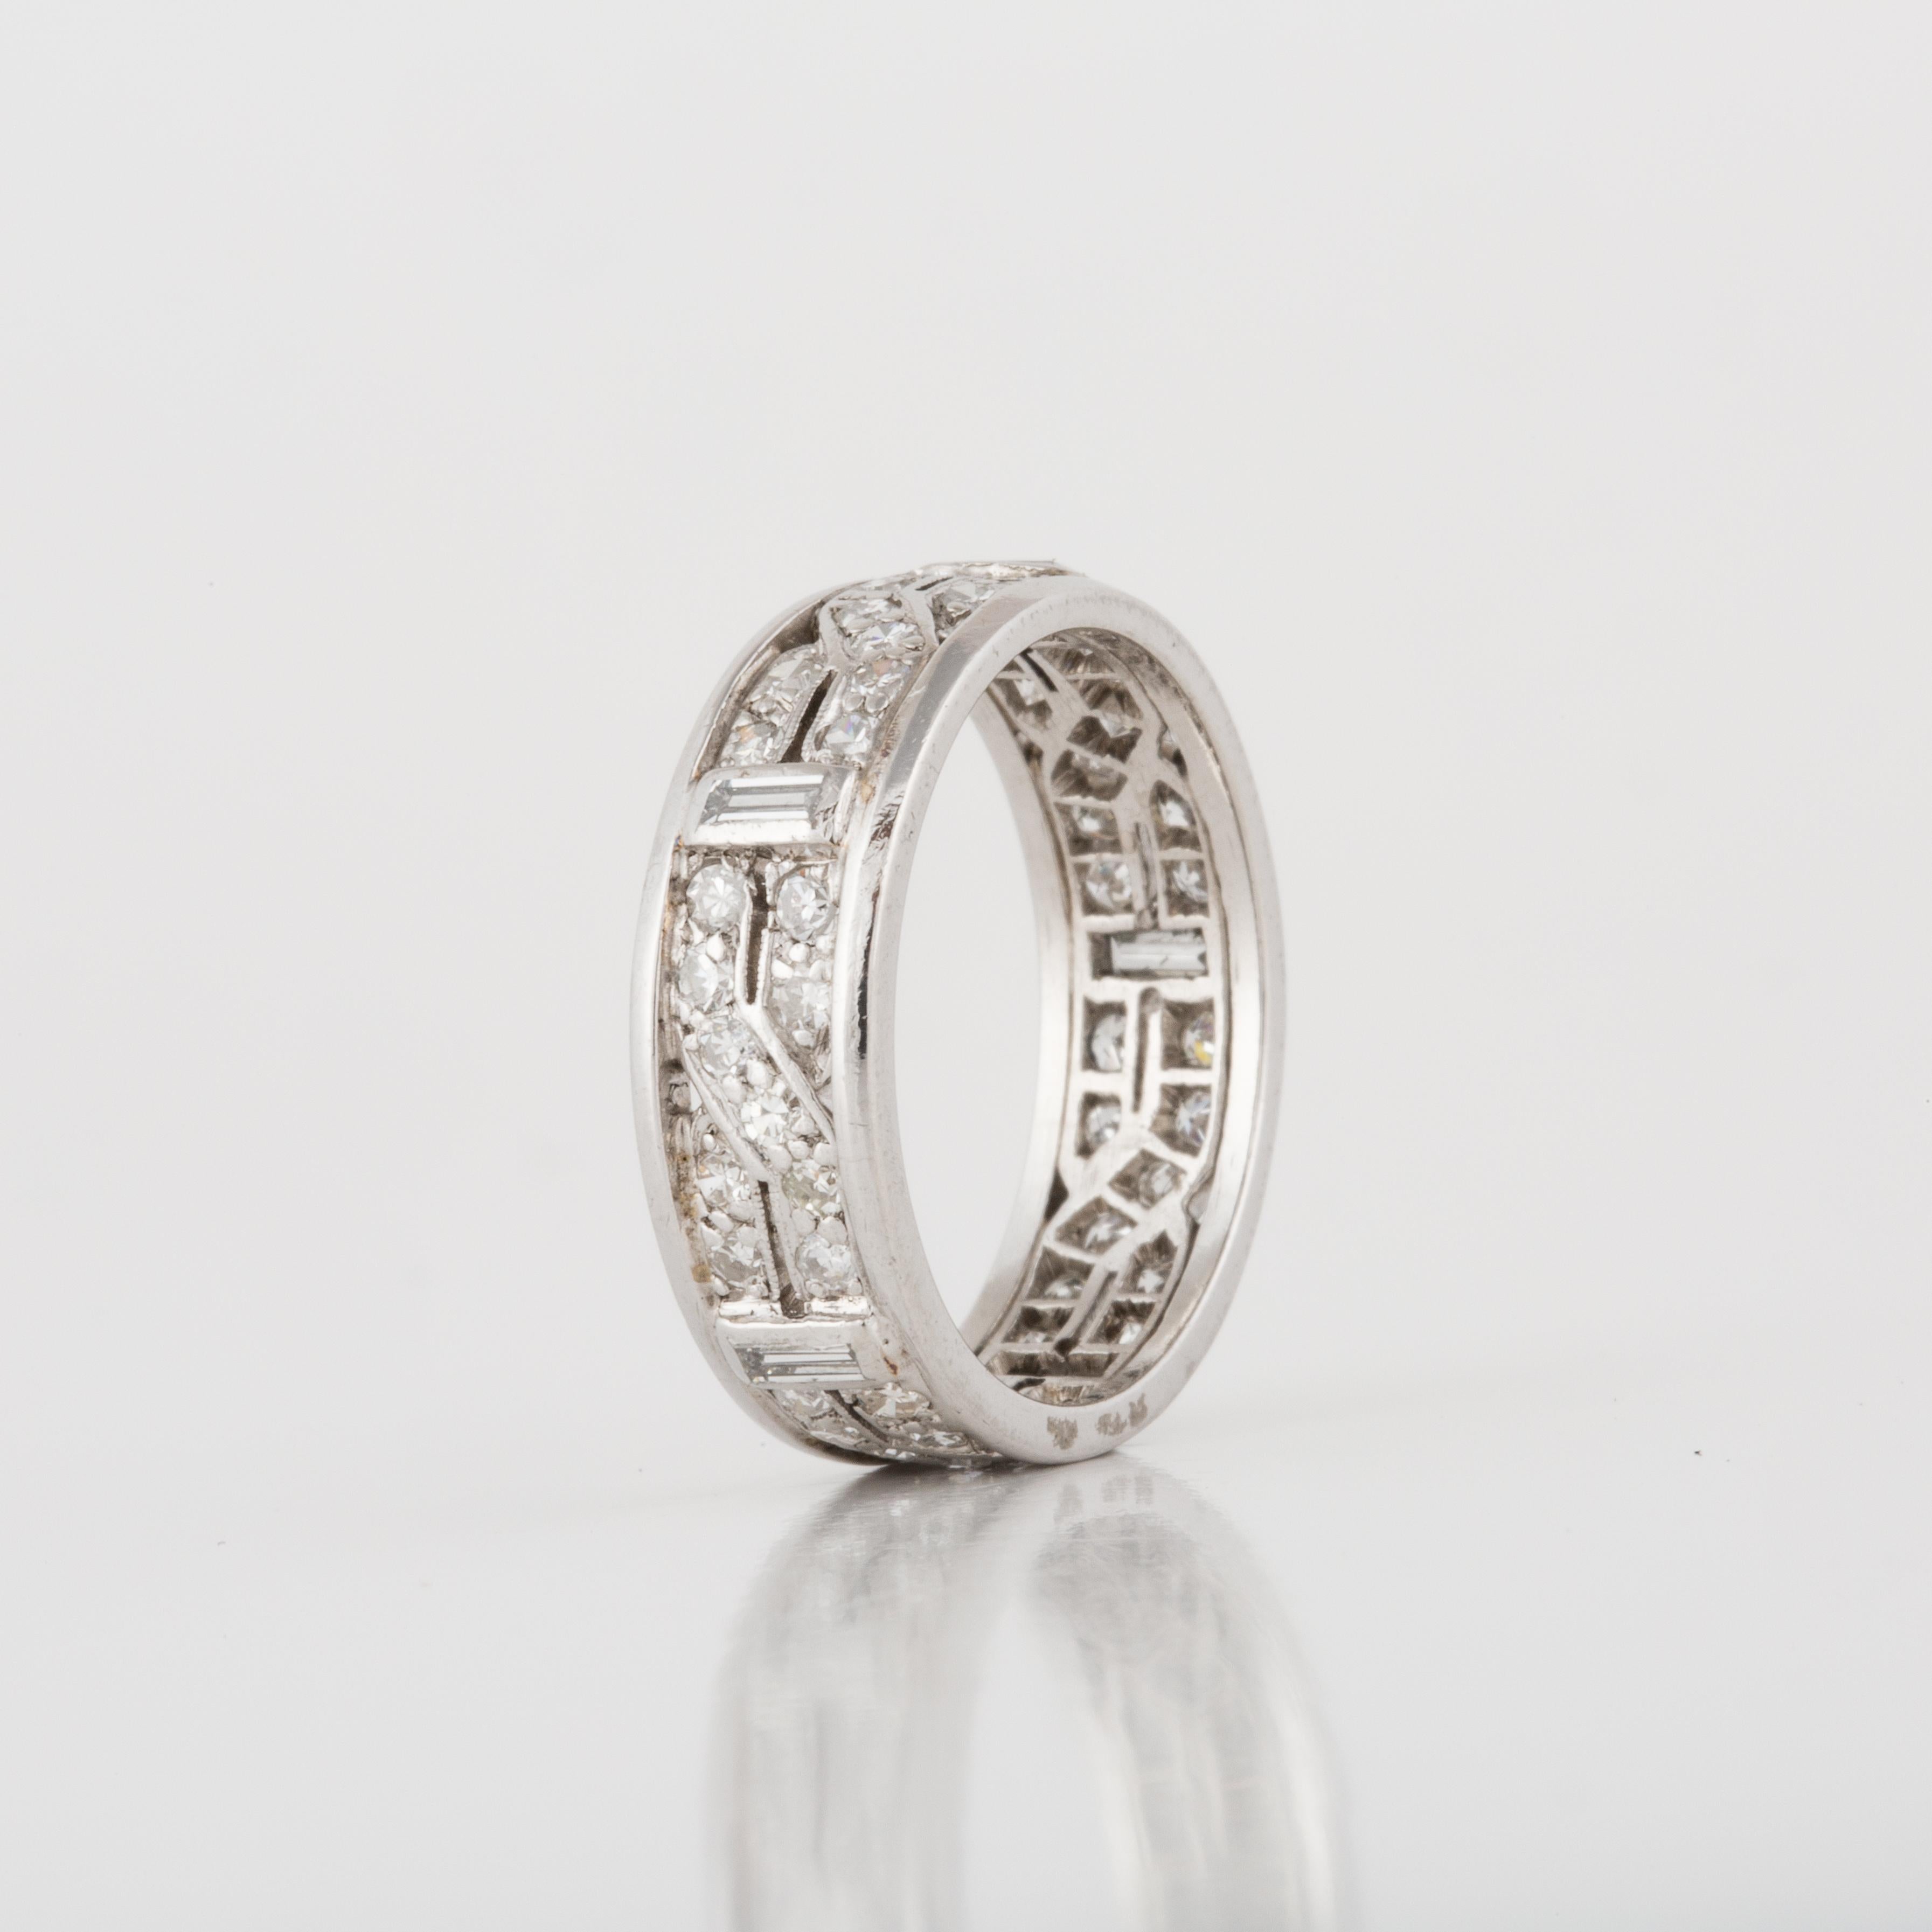 Bracelet d'éternité Art déco en or blanc 18 carats avec diamants.  Le bracelet comporte 50 diamants taille unique d'une valeur totale de 1,00 carat et cinq diamants baguettes d'une valeur totale de 0,25 carat.  La bague est de taille 6 et mesure 15